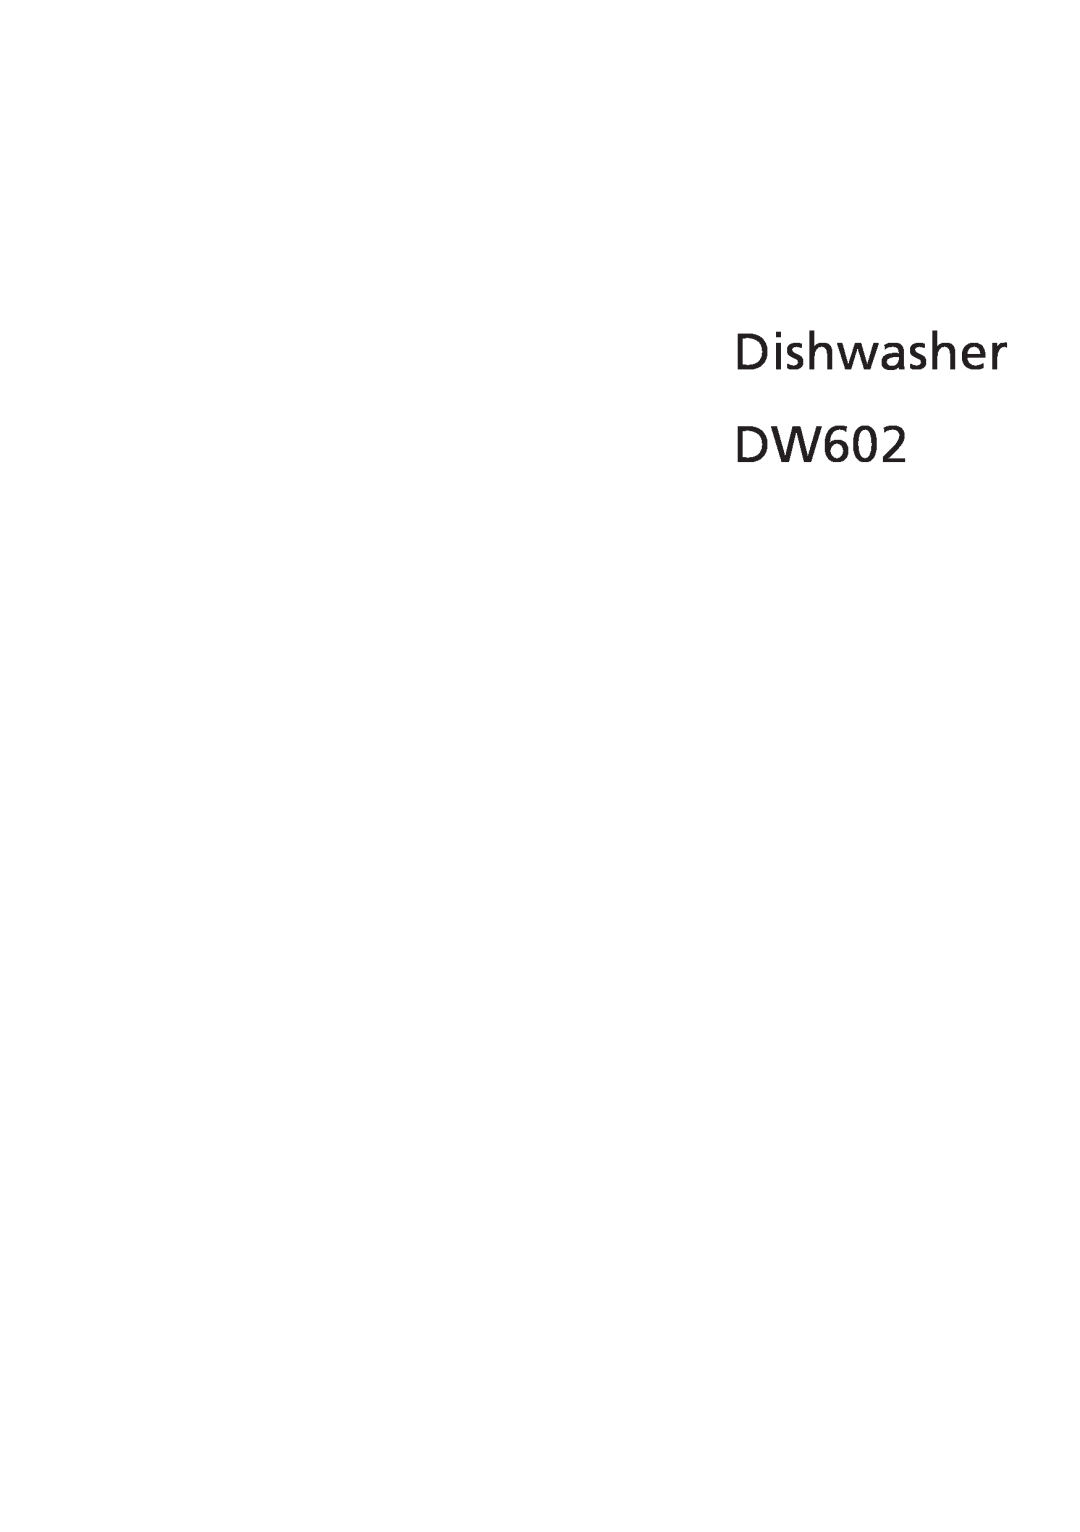 Beko manual Dishwasher DW602 